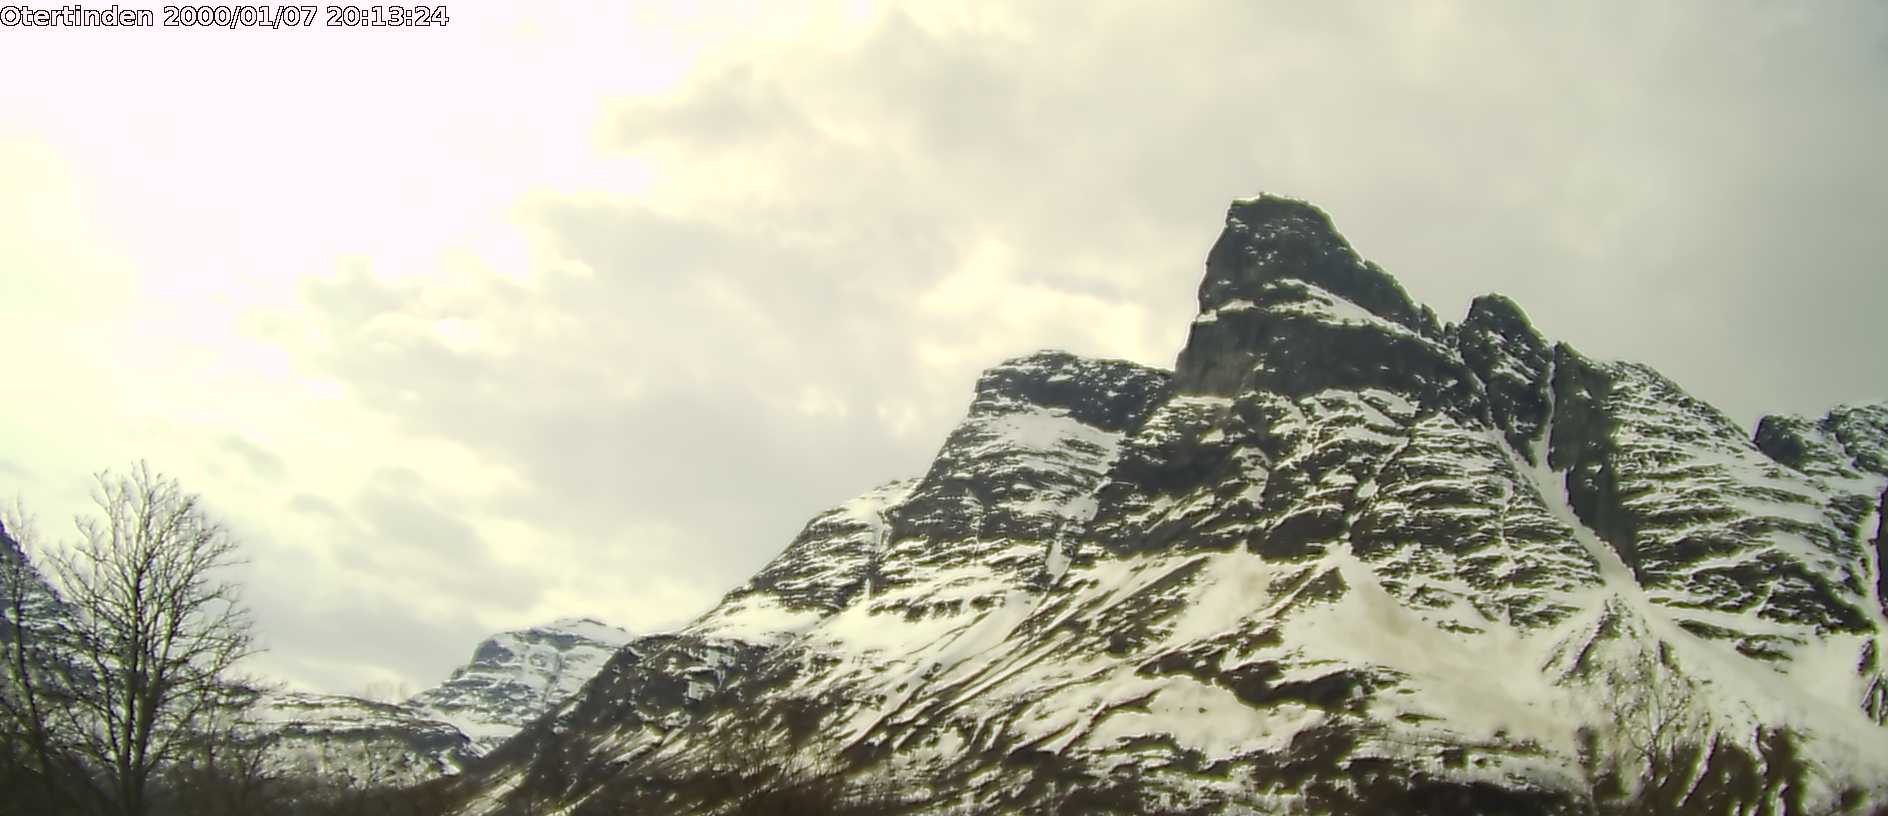 Webcam Otertinden, Storfjord, Troms, Norwegen